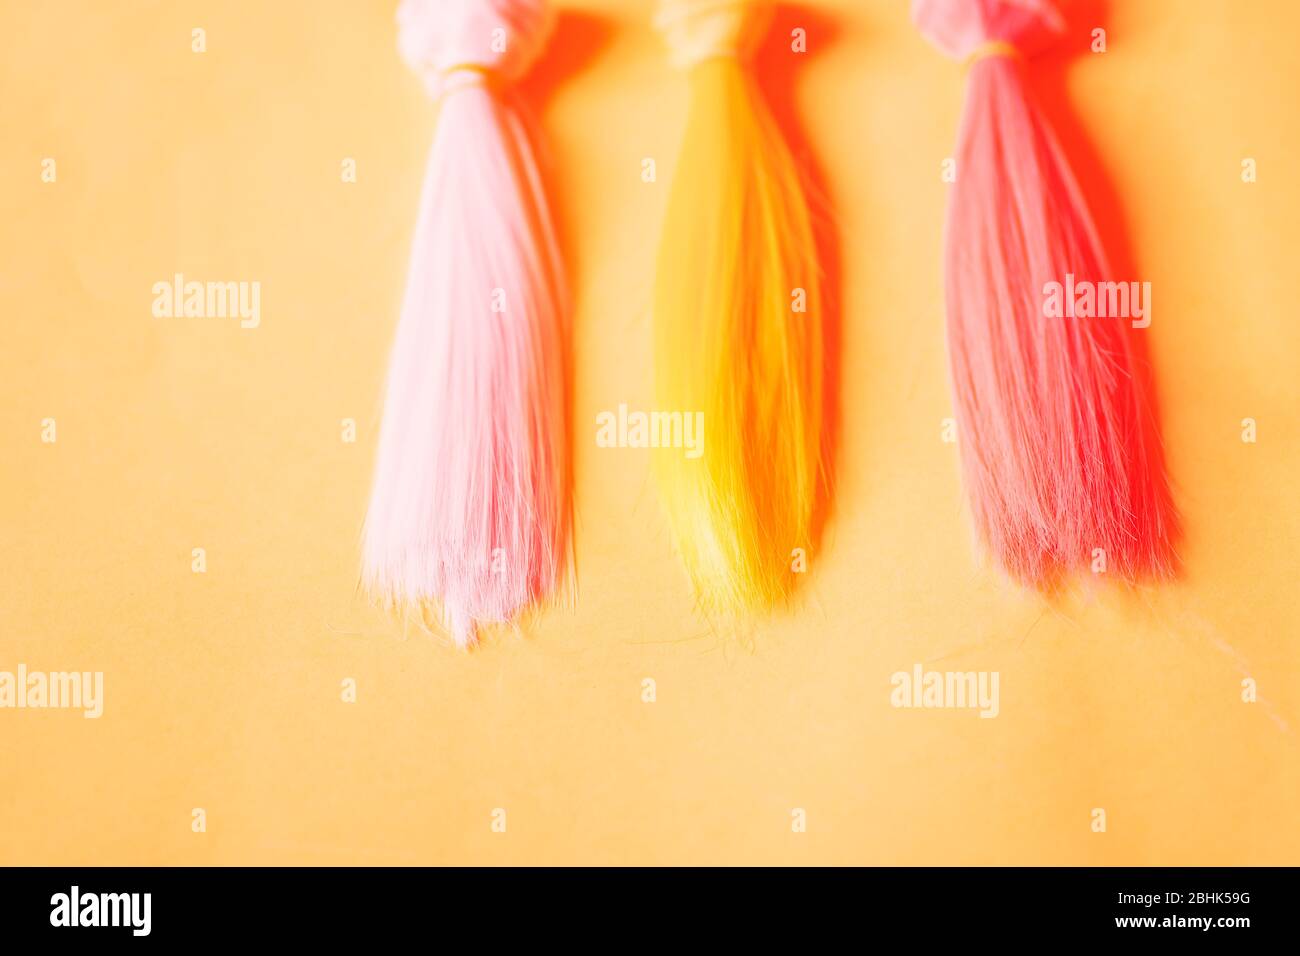 Mehrfarbige, gerade lange Haare, Perücken für handgefertigte Puppen auf gelbem Hintergrund. Handarbeit, Hobby, Freizeitkonzept. Draufsicht. Farbige Haarsträhnen. Stockfoto